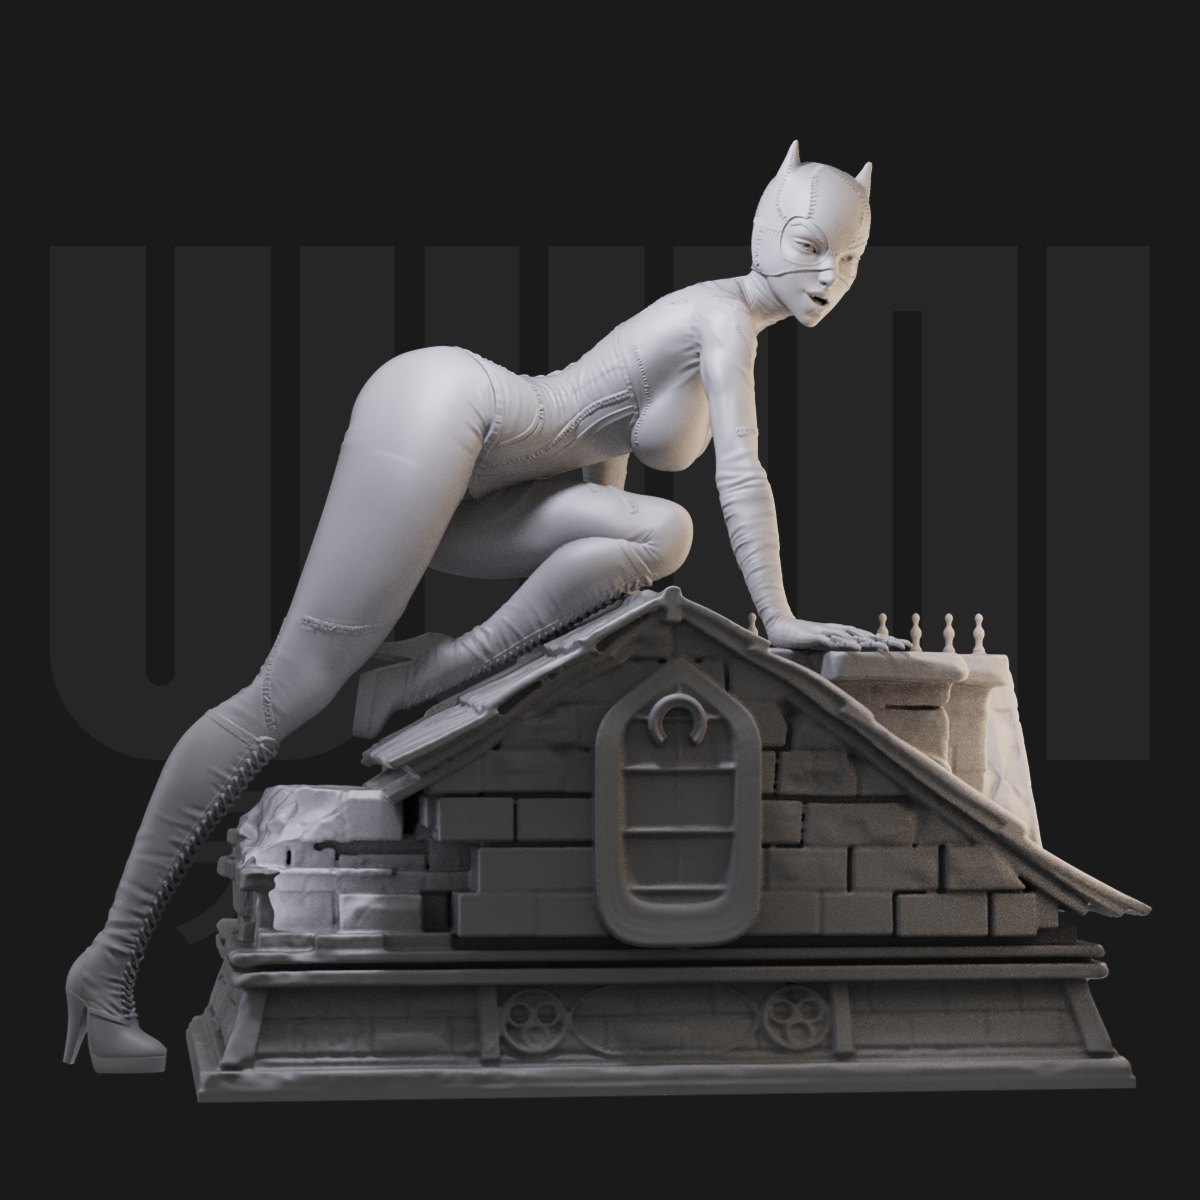 1/24猫女蝙蝠侠 双人场景 18比例GK白模手办 3D打印兵人模型 2435